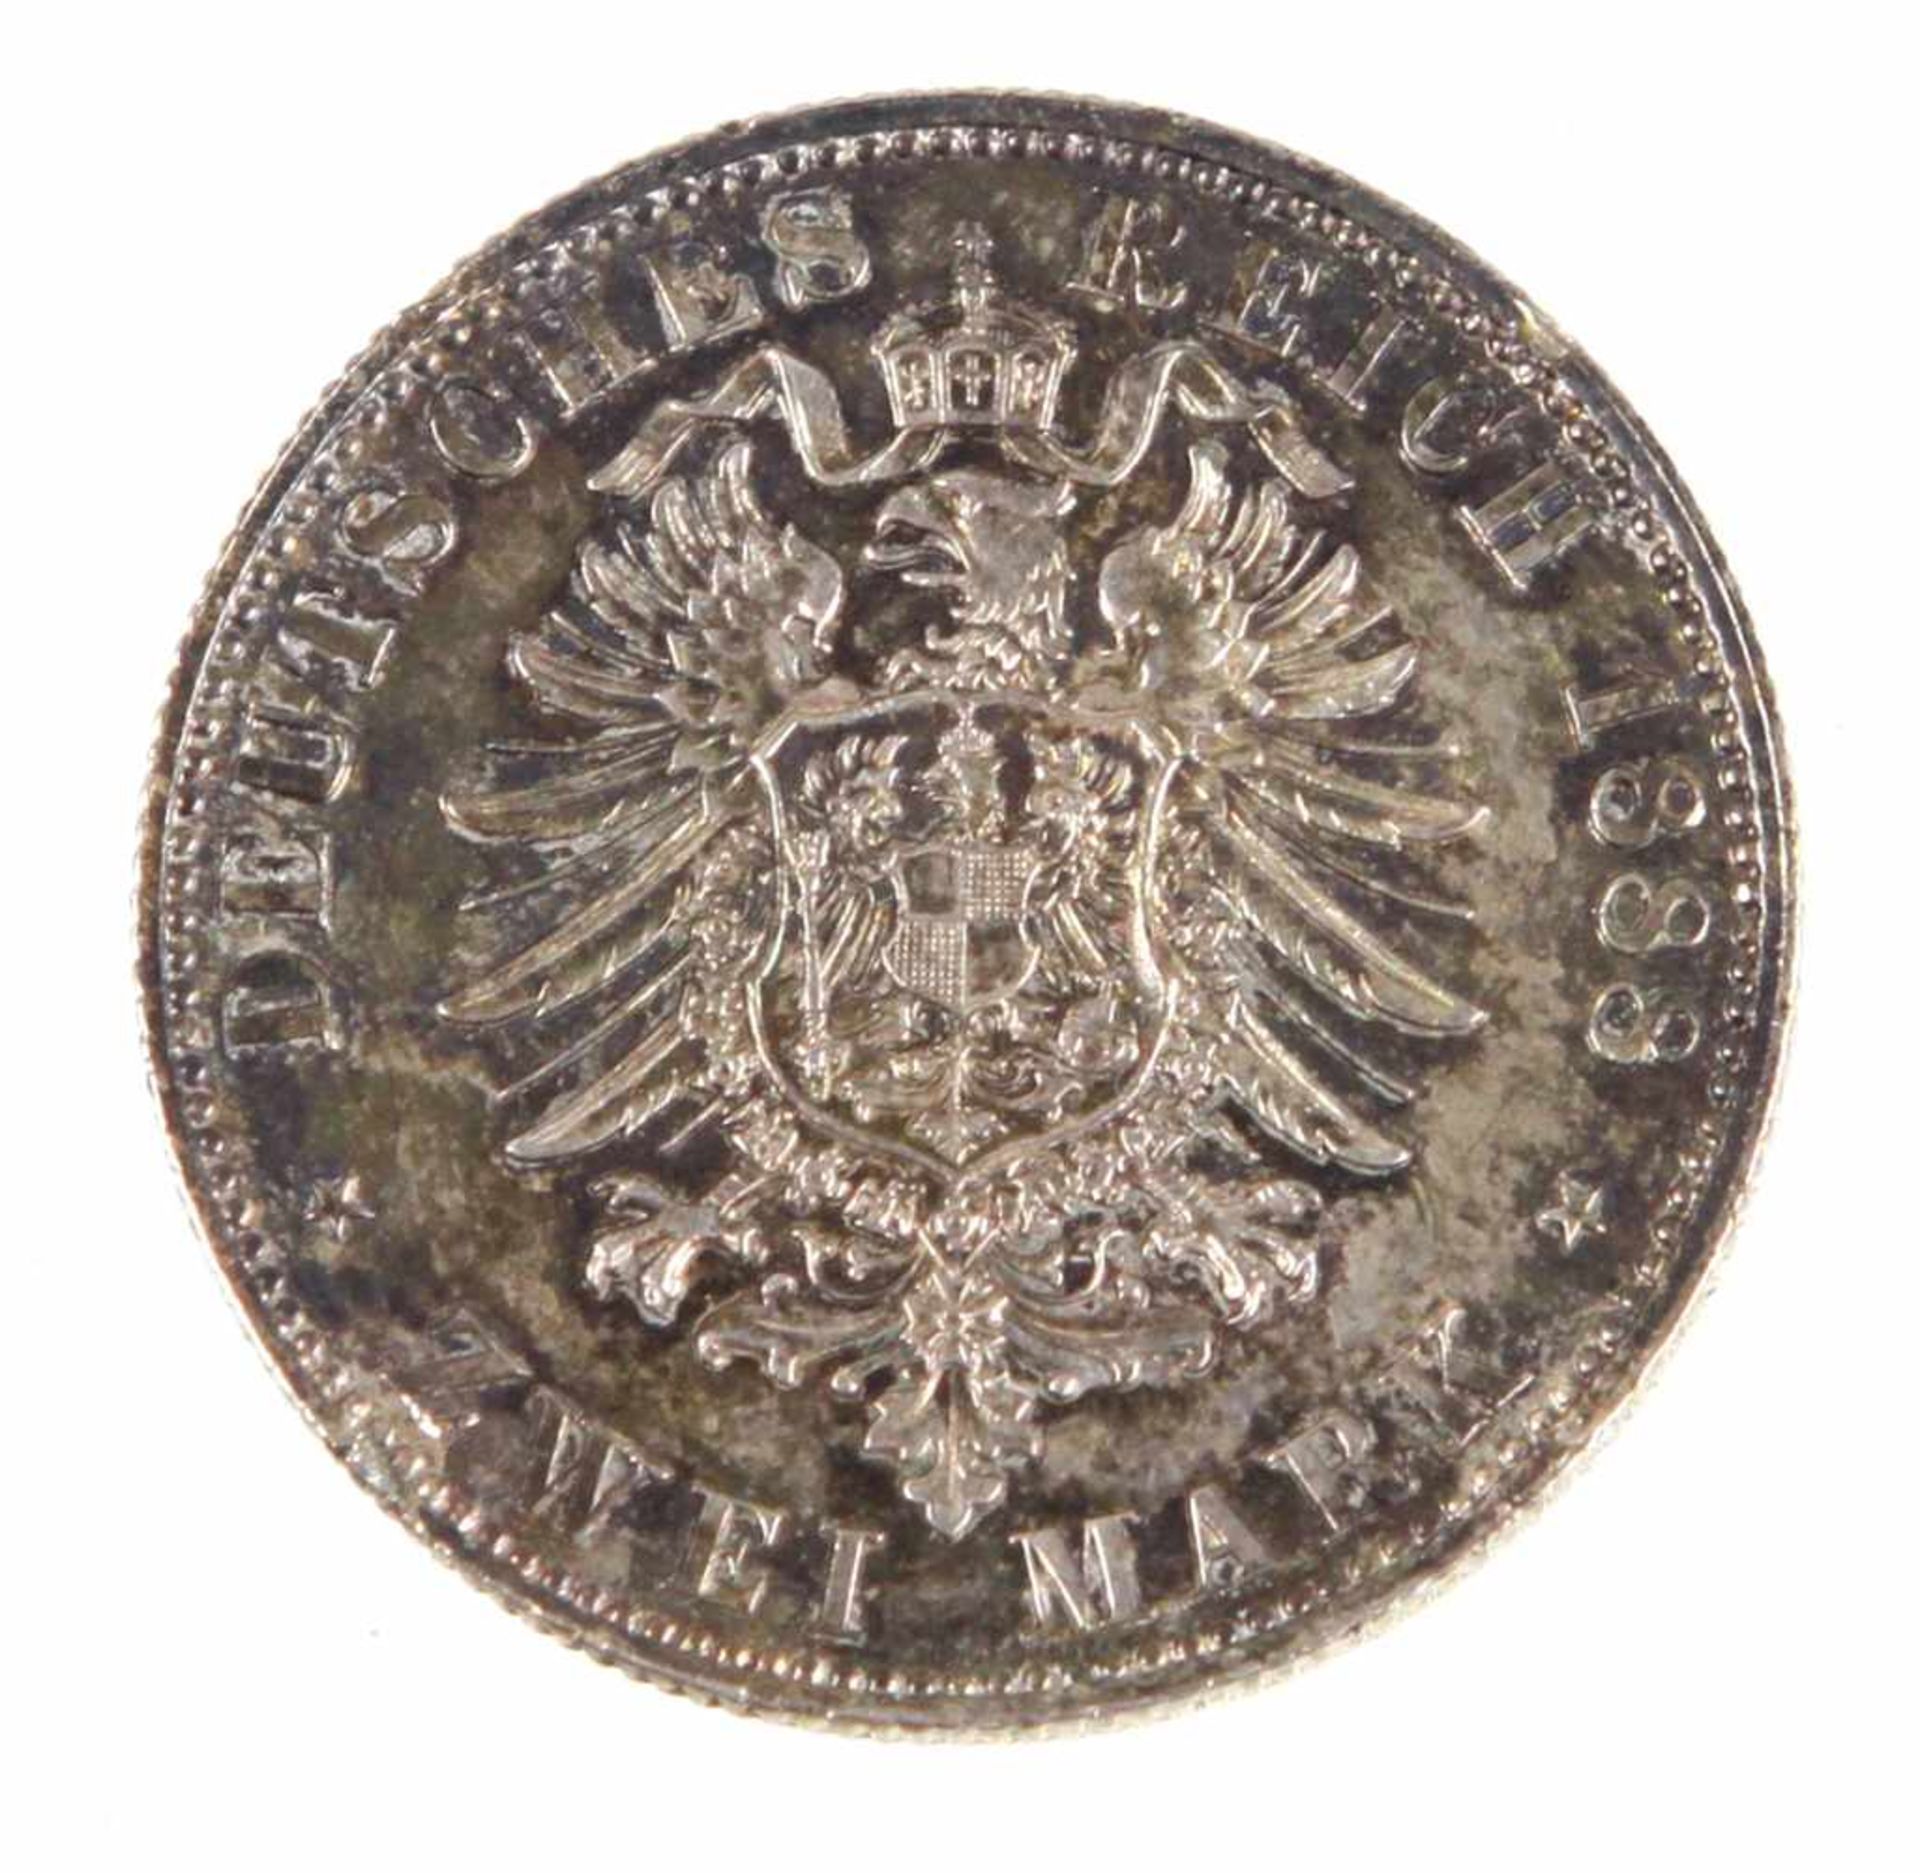 2 Mark Friedrich Preussen 1888Silbermünze Zwei Mark Deutsches Reich 1888, so um gekrönten - Bild 2 aus 2